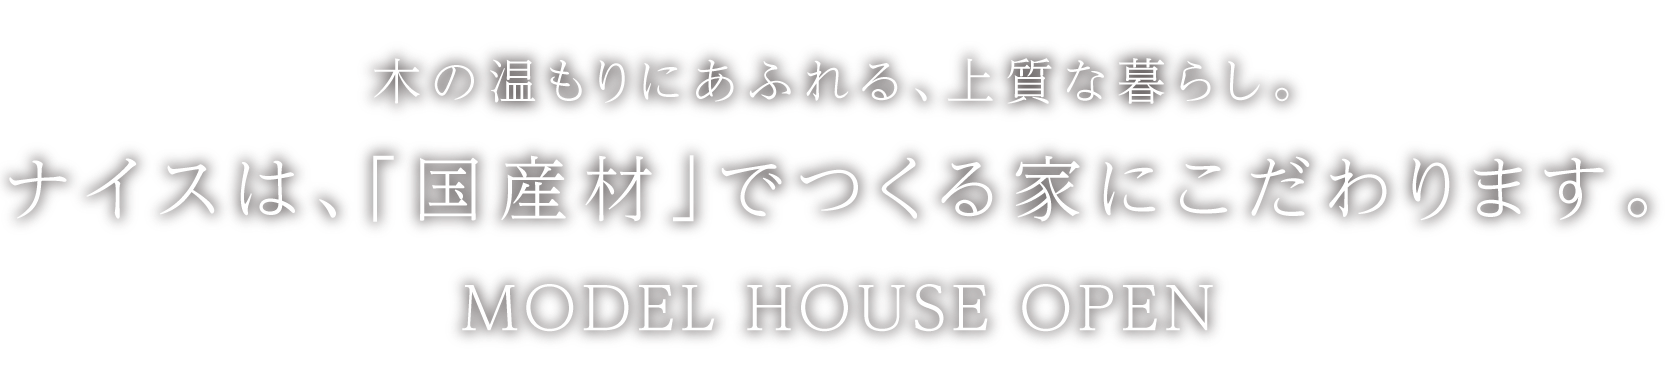 tvkハウジングプラザ横浜 ナイスは、「国産材」でつくる家にこだわります。 MODEL HOUSE OPEN